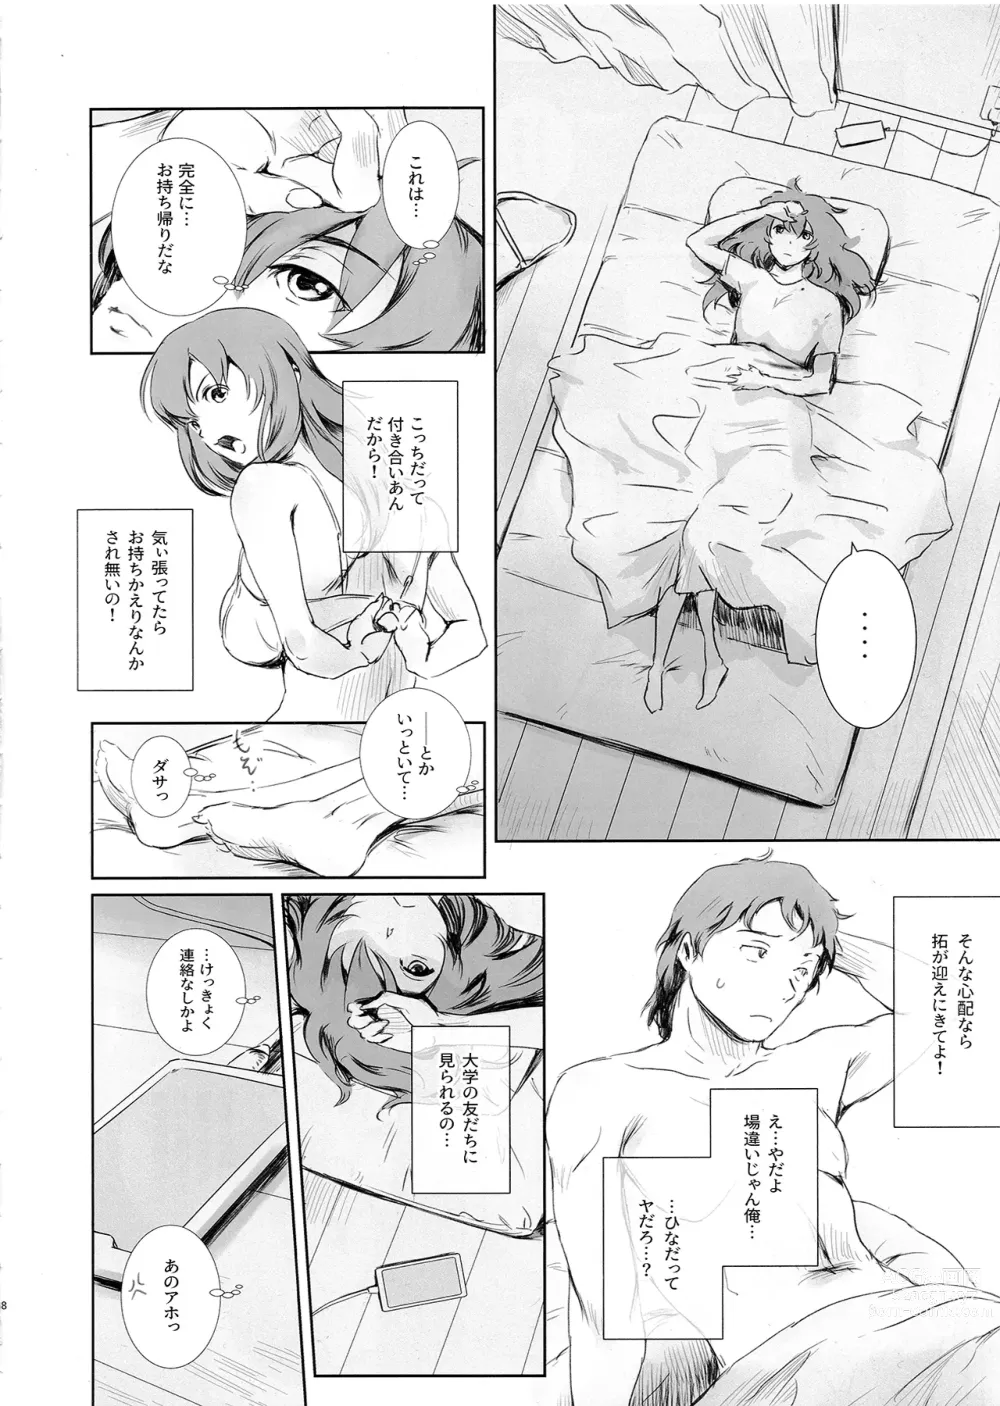 Page 7 of doujinshi Niketsu no Futari